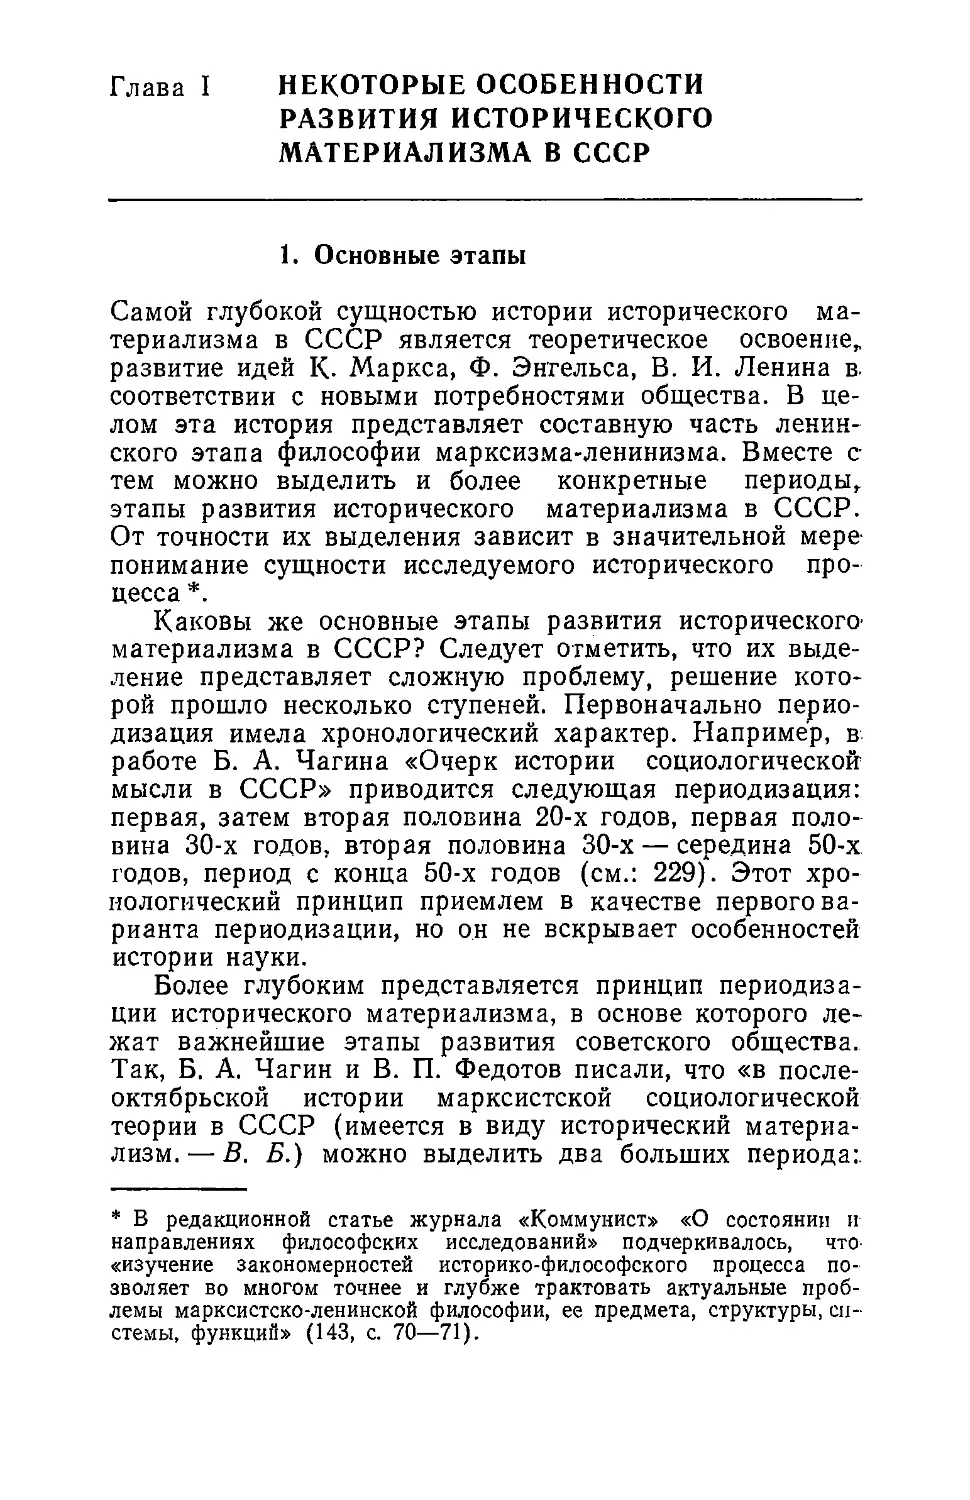 Глава I. Некоторые особенности развития исторического материализма в СССР